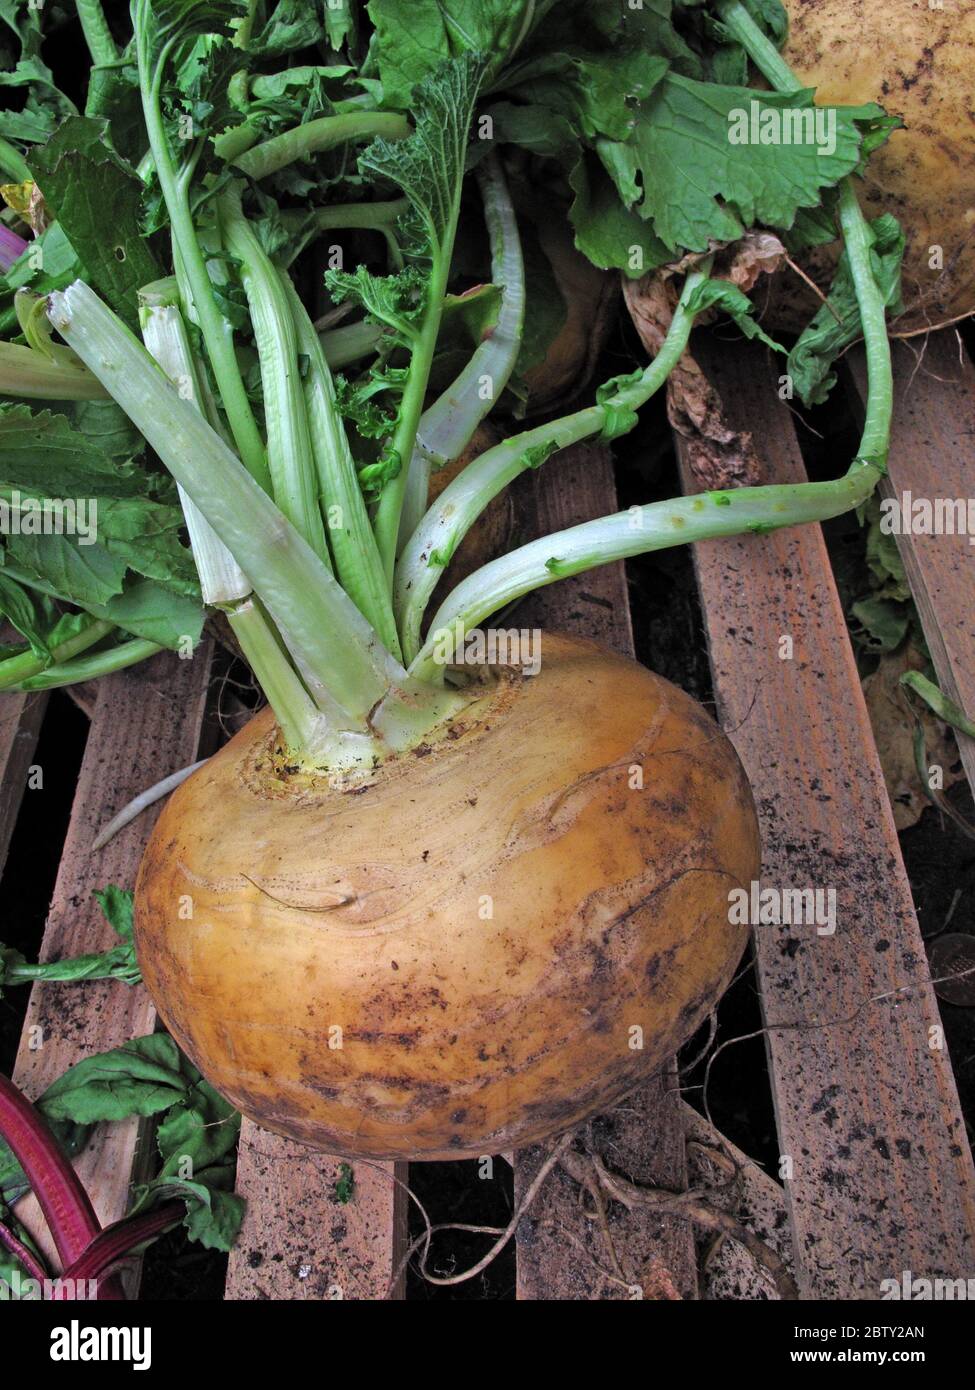 Plante biologique de Turnip, avec de la boue, des légumes végétaliens ou végétariens - Jardinage pour le Brexit Banque D'Images